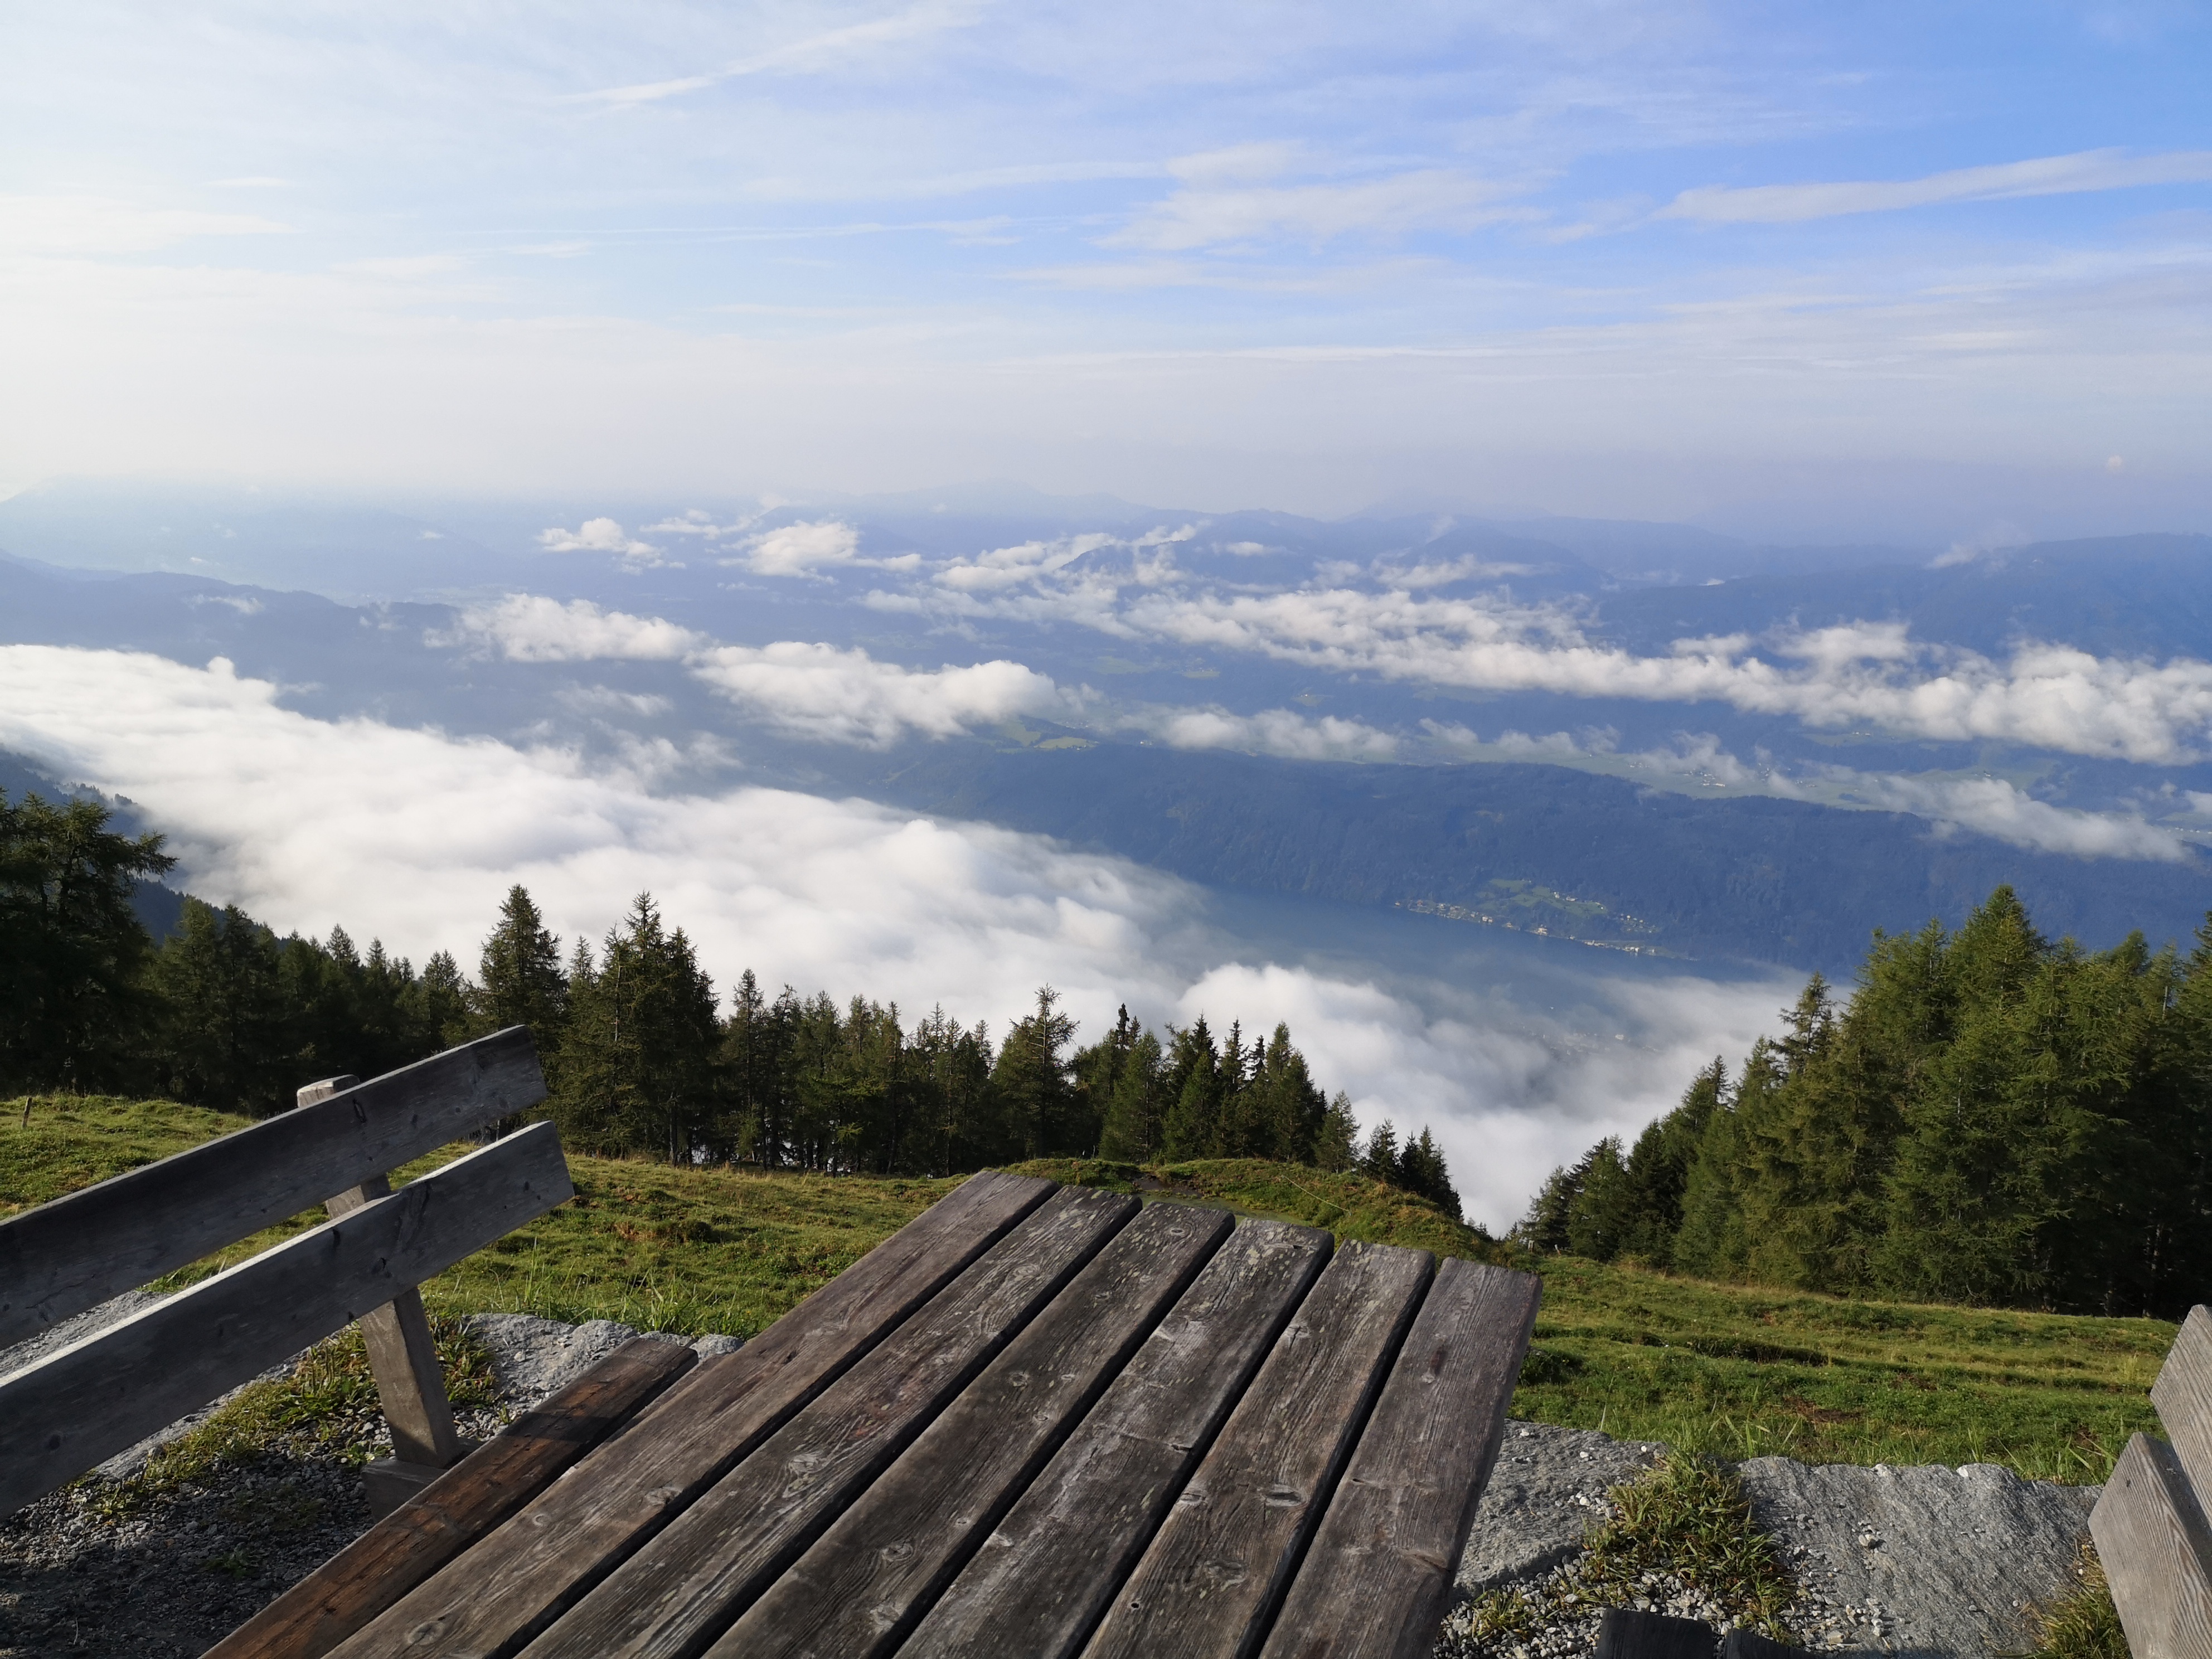 De Alpe Adria Trail - Etappe 13 - Wandelen in Karinthië, Oostenrijk